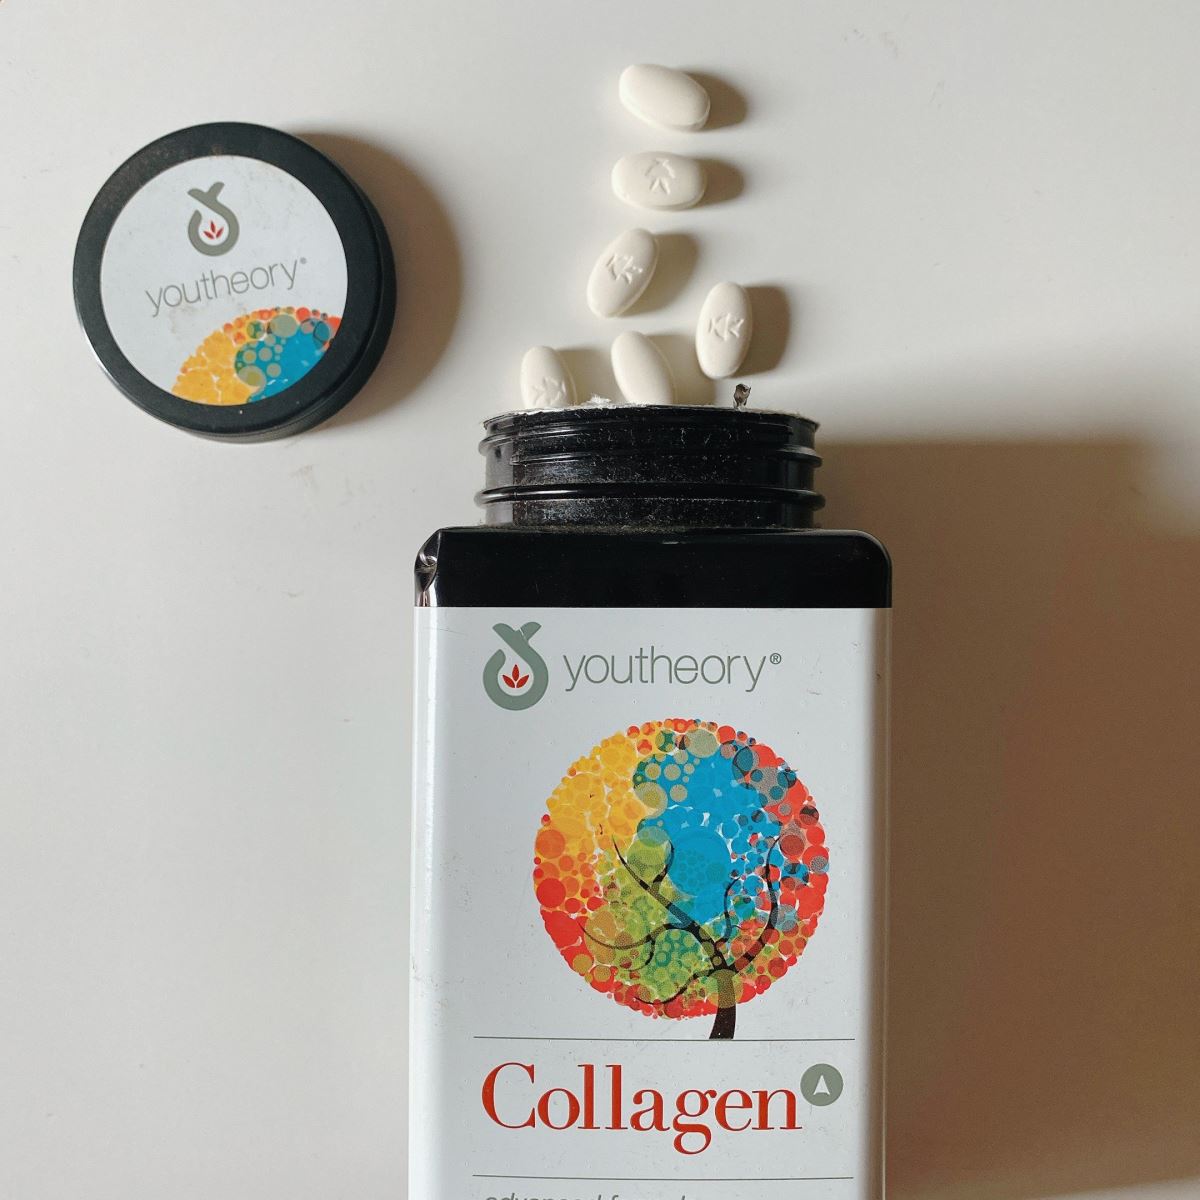 Liệu trình uống collagen youtheory như thế nào